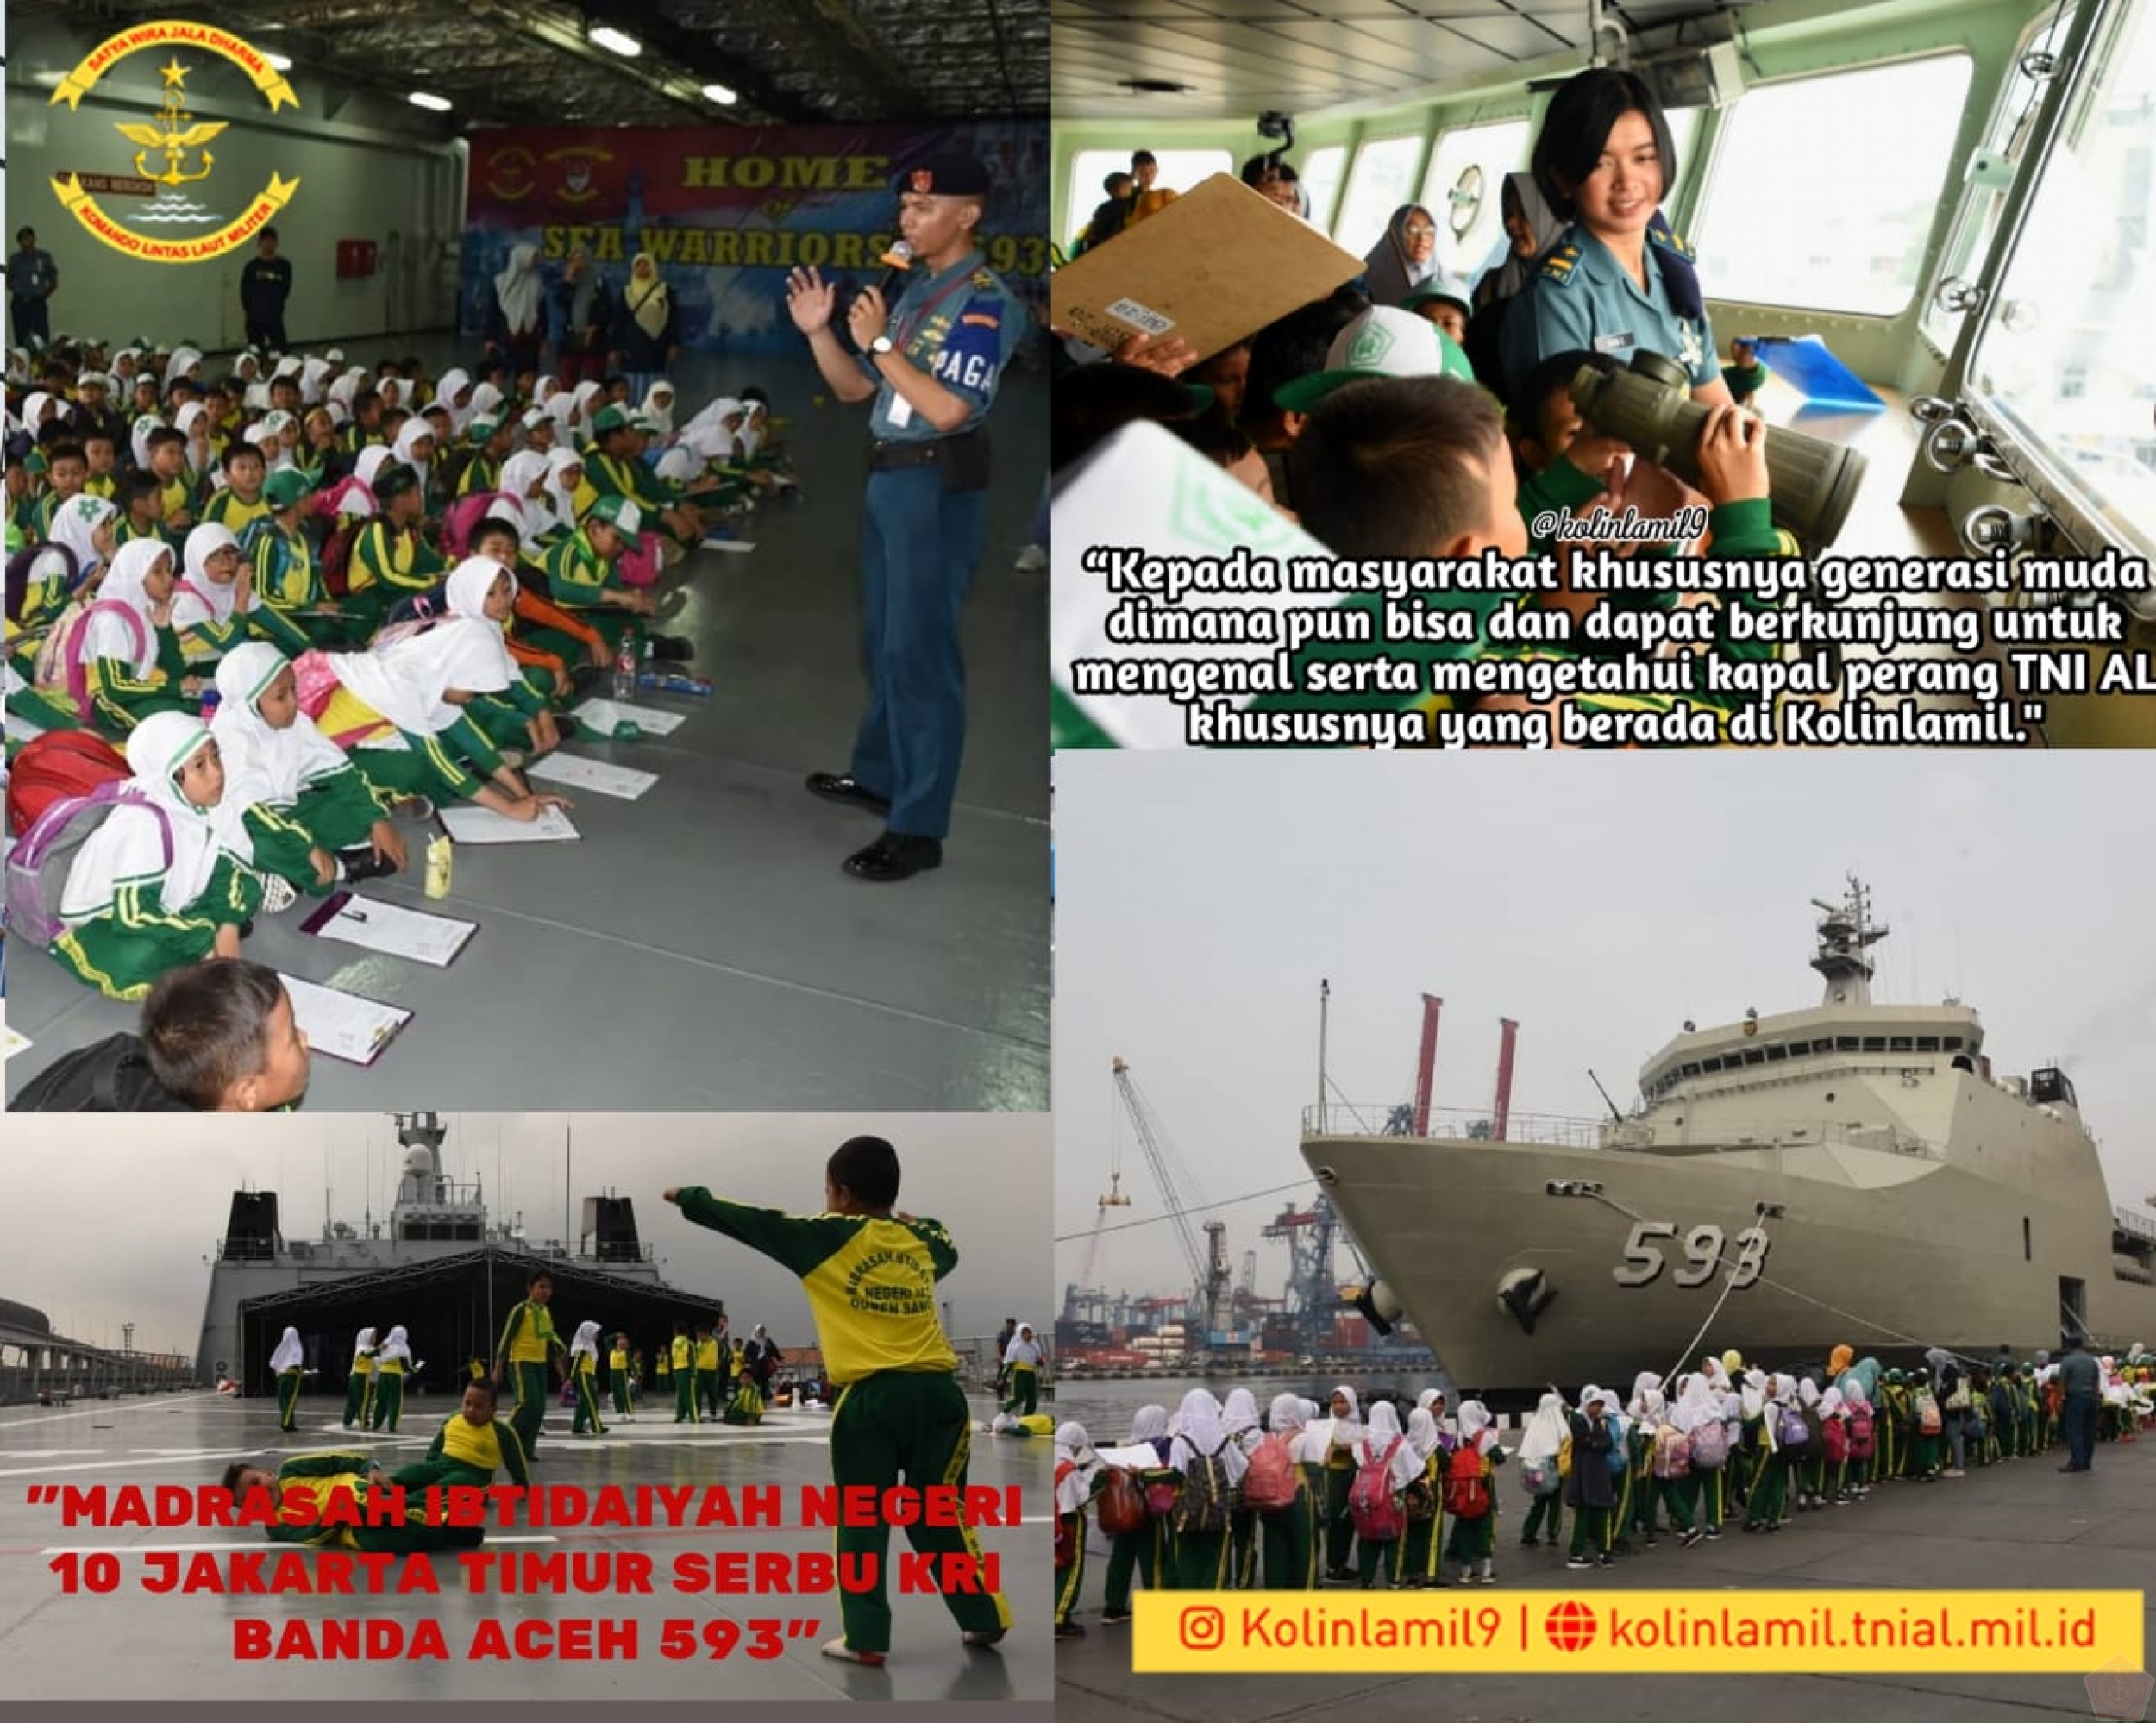 Sandar Di Dermaga Kolinlamil Kri Banda Aceh 593 Langsung Diserbu Pelajar Min 10 Jaktim Website Tentara Nasional Indonesia